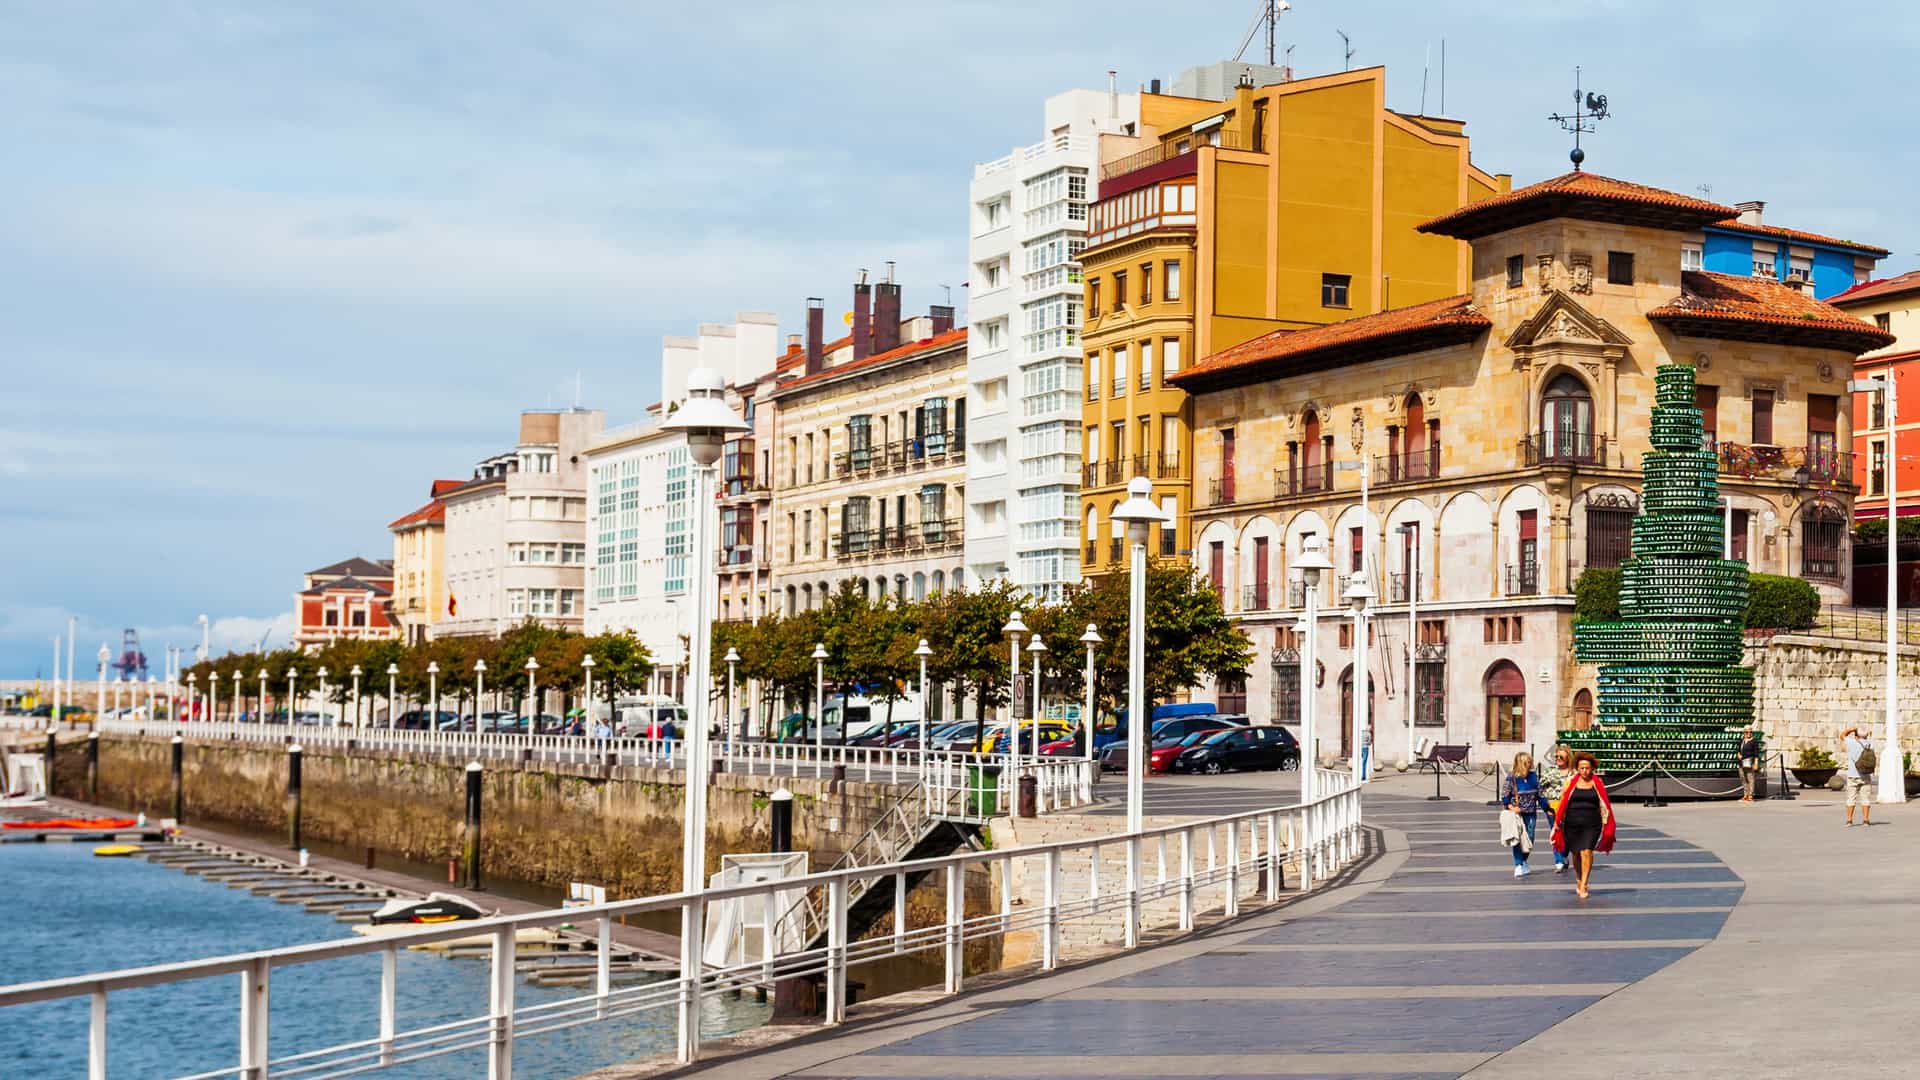 Puerto deportivo de Gijón en Asturias donde están disponibles los servicios de telecomunicaciones de telecable